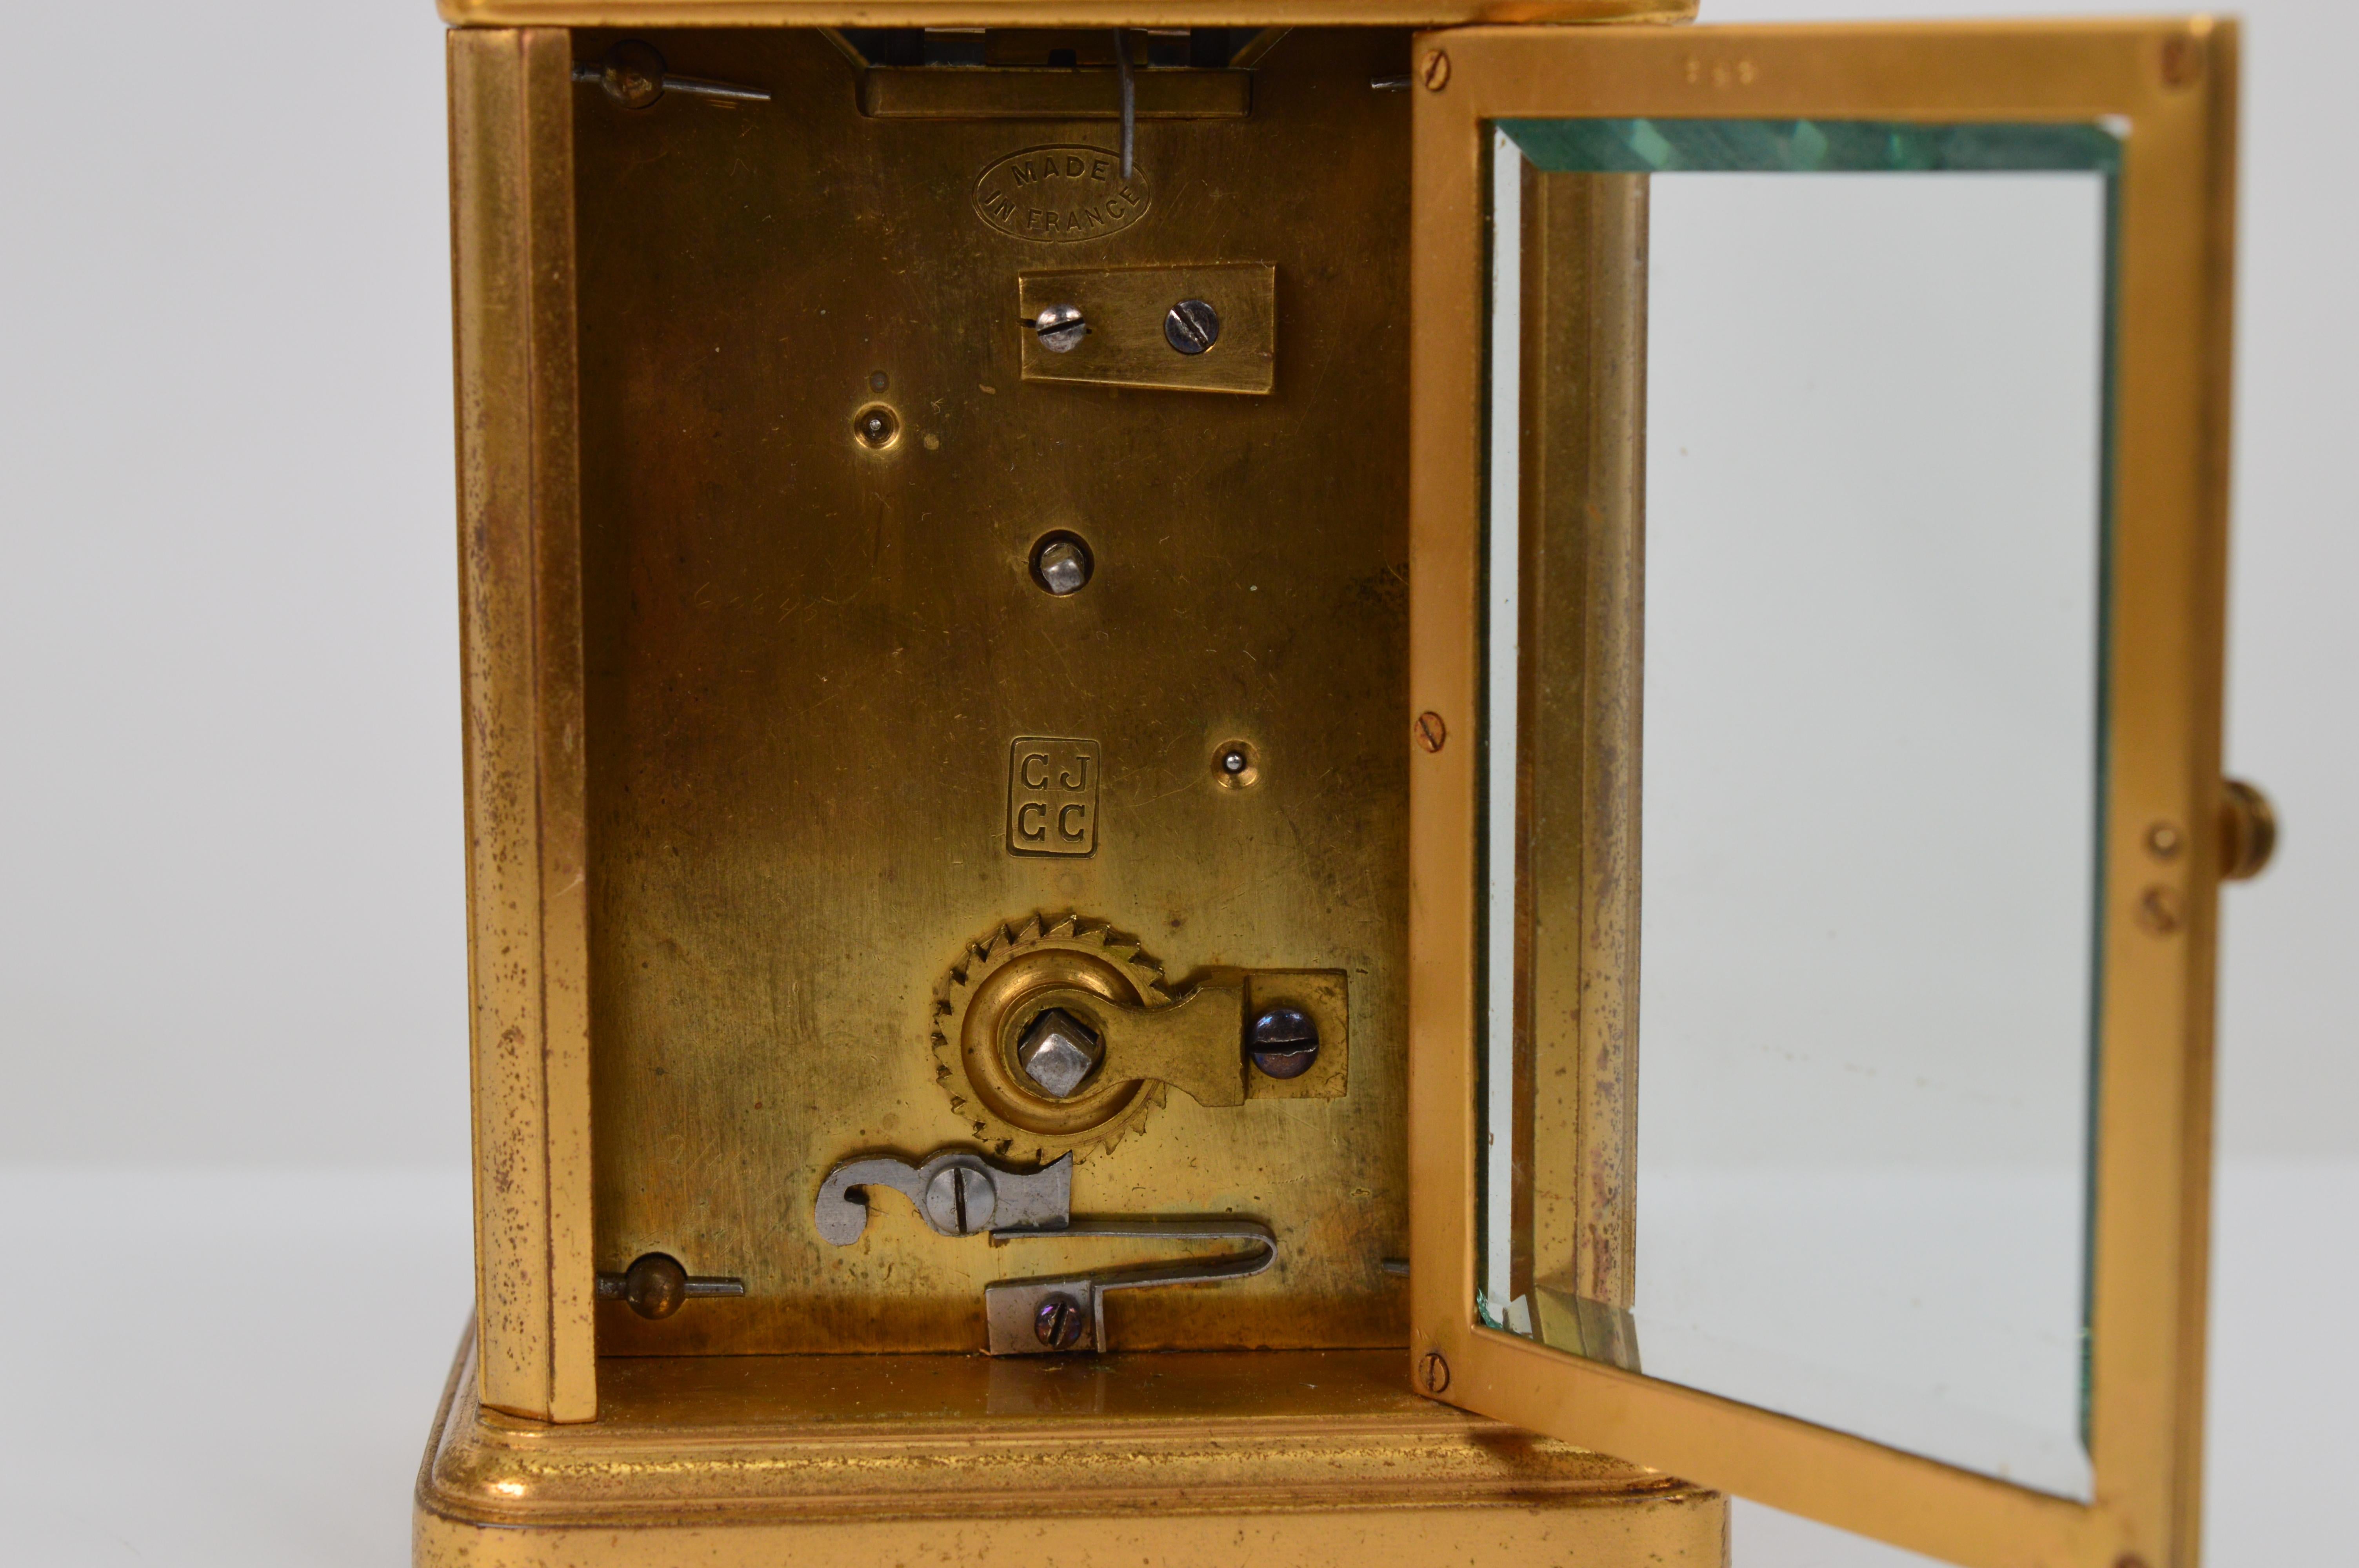 miniature brass clocks